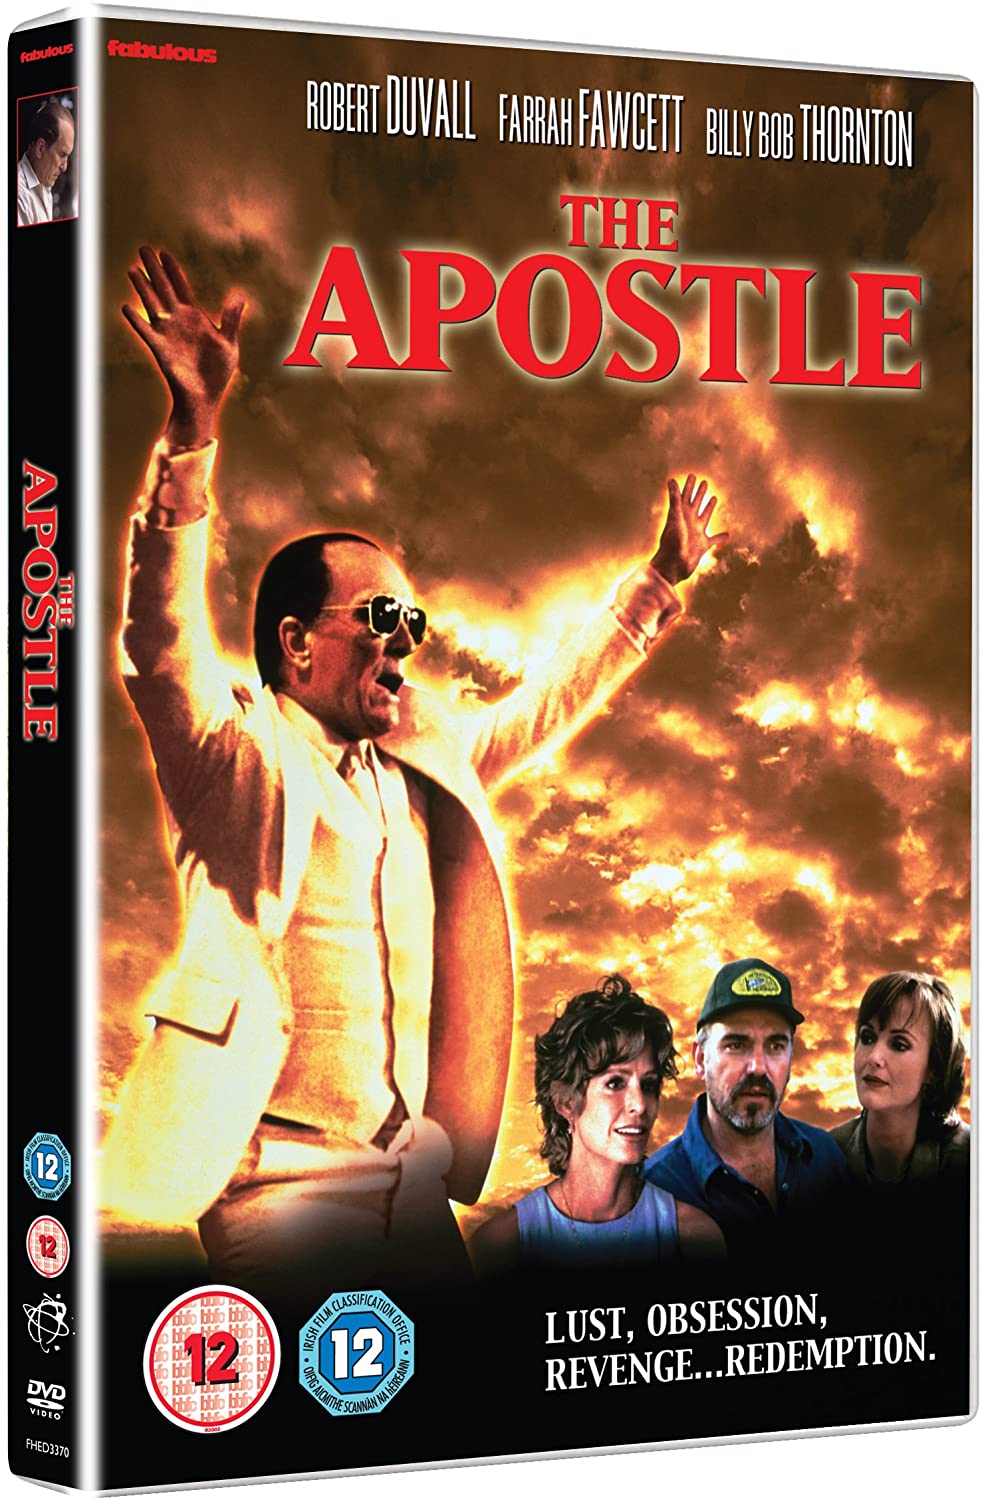 The Apostle DVD - Robert Duwall